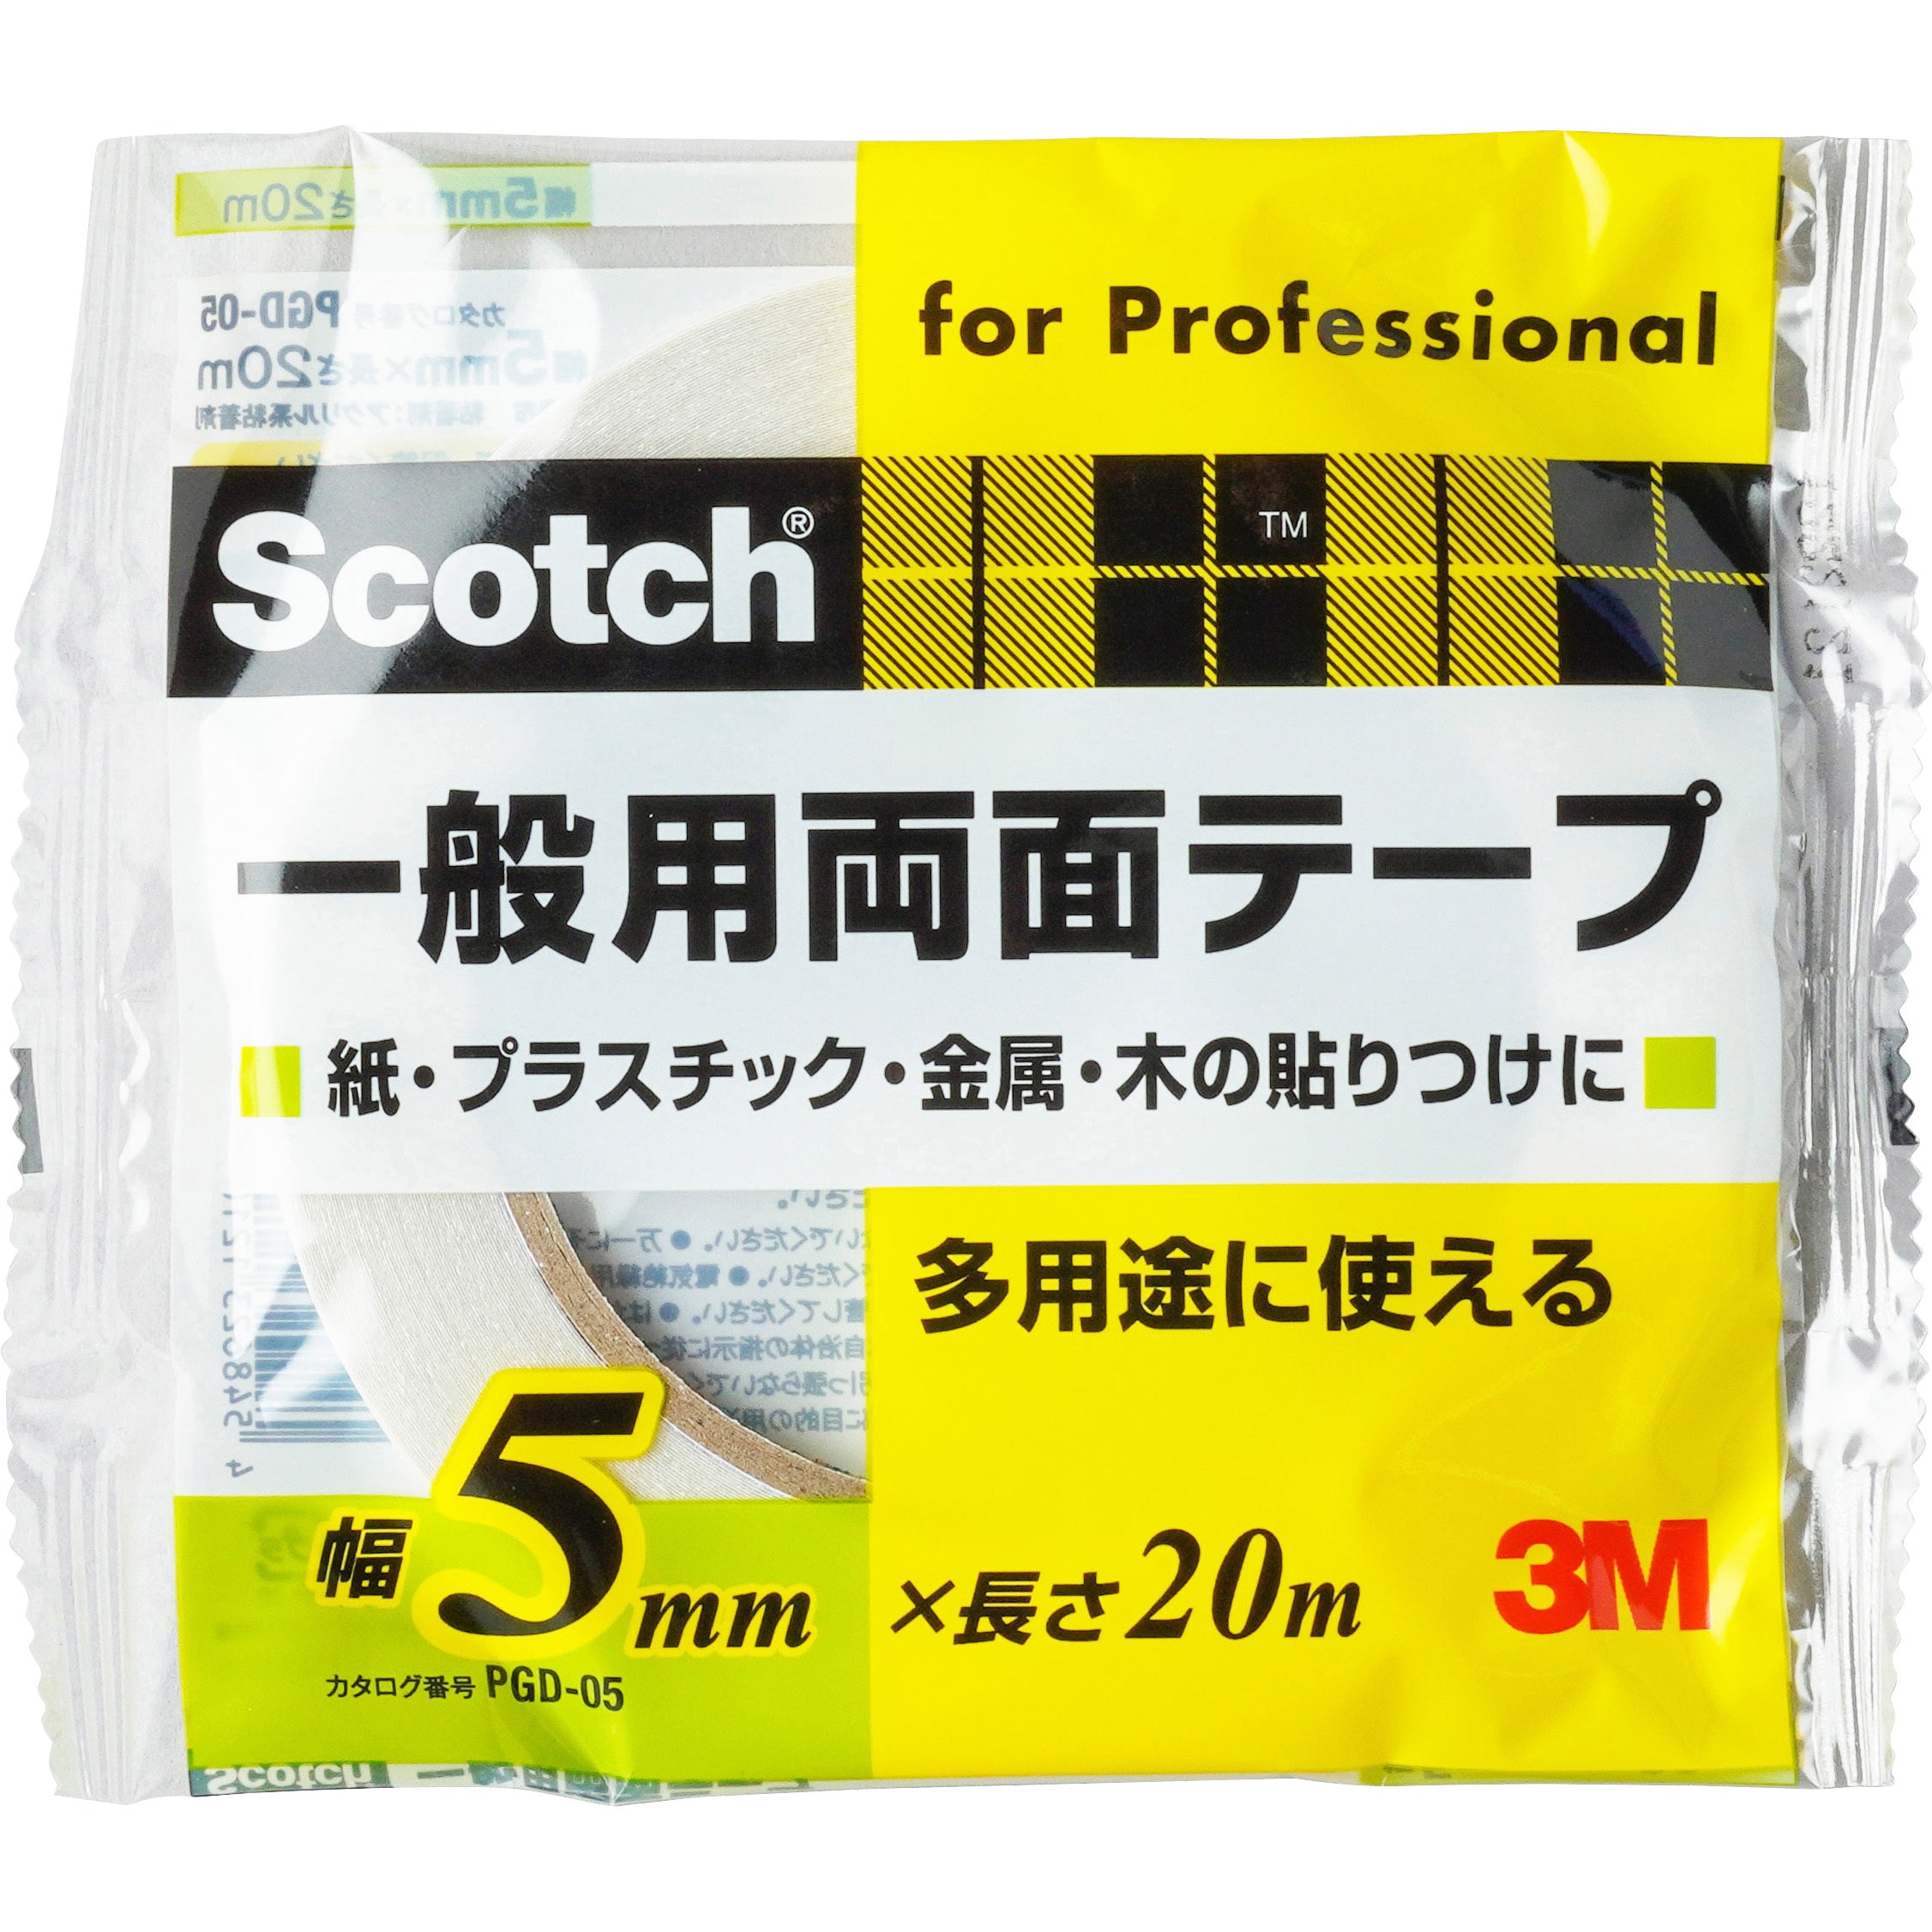 Scotch 一般用両面テープ PGD-5 3M 幅5mm 長さ20m 多用途に使える 紙